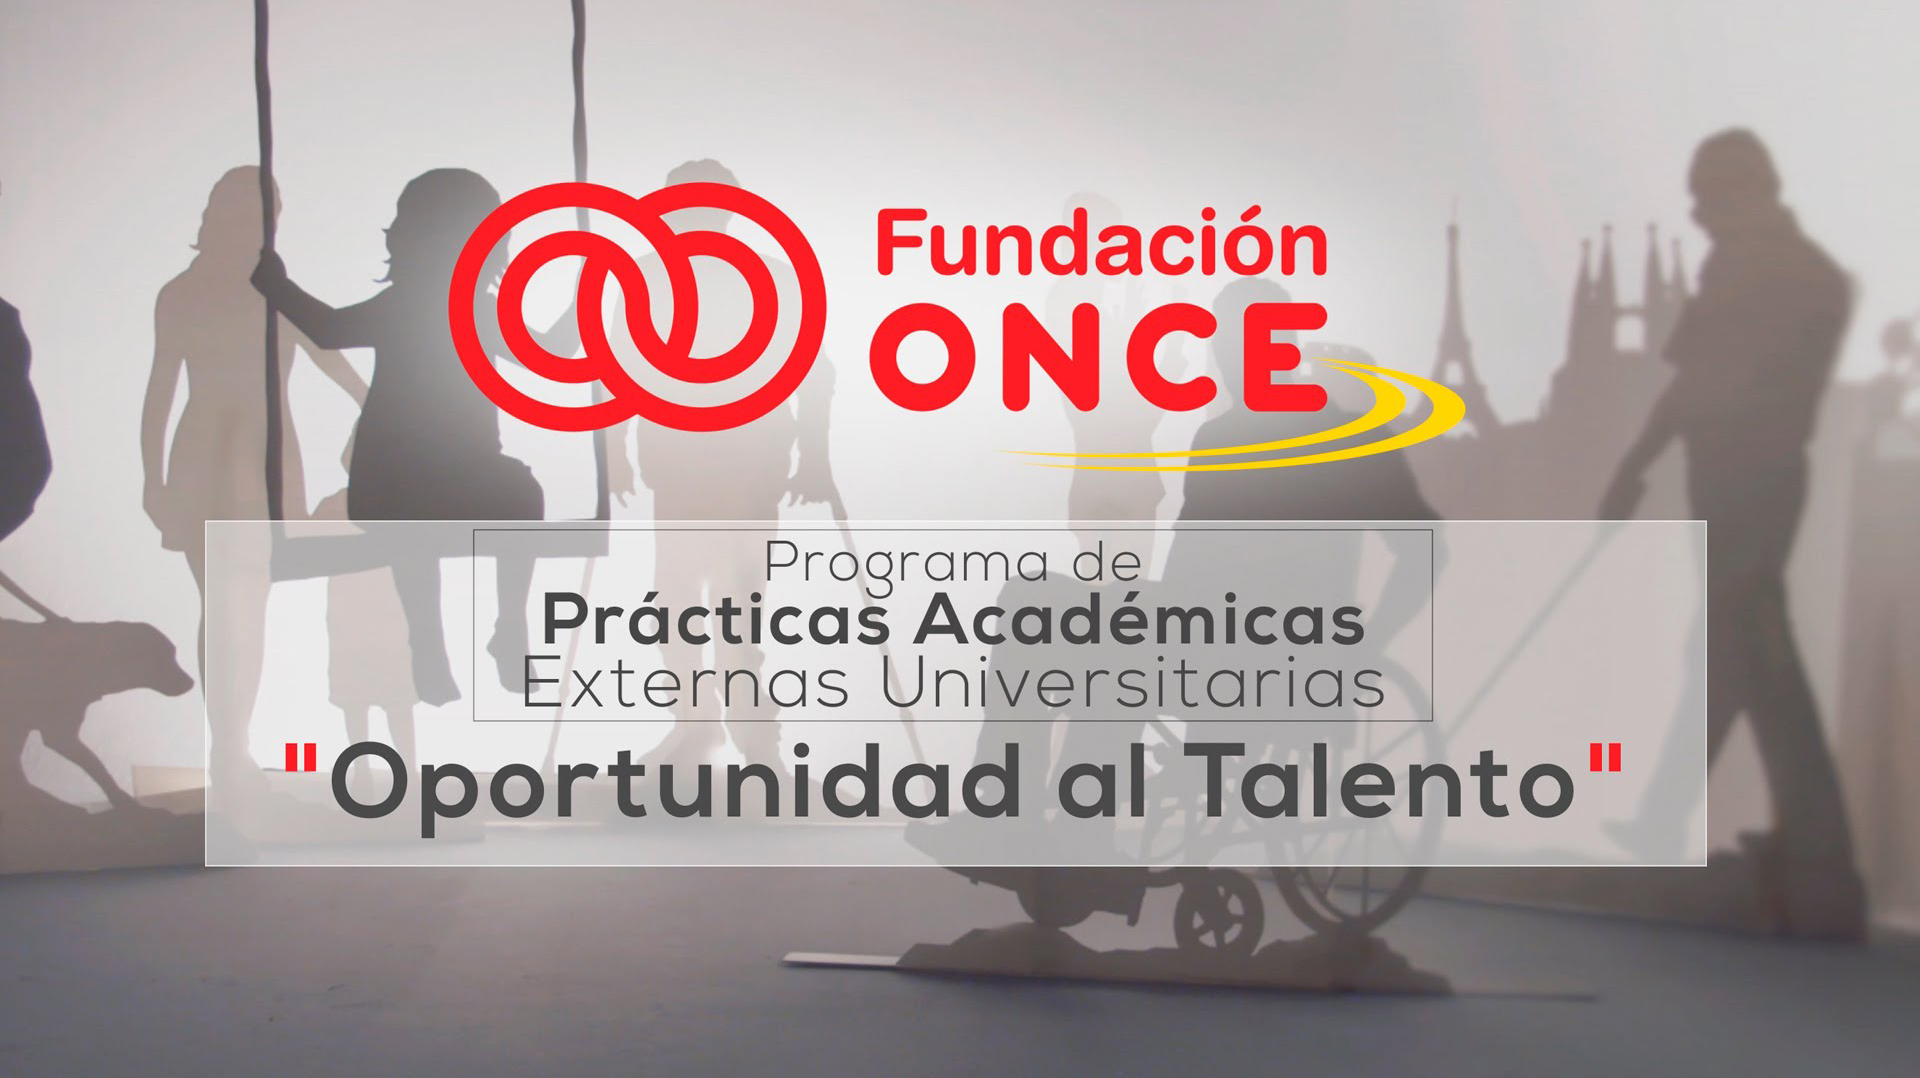 Programa de Becas de la Fundación ONCE “Oportunidad al Talento” (Convocatoria III Edición)